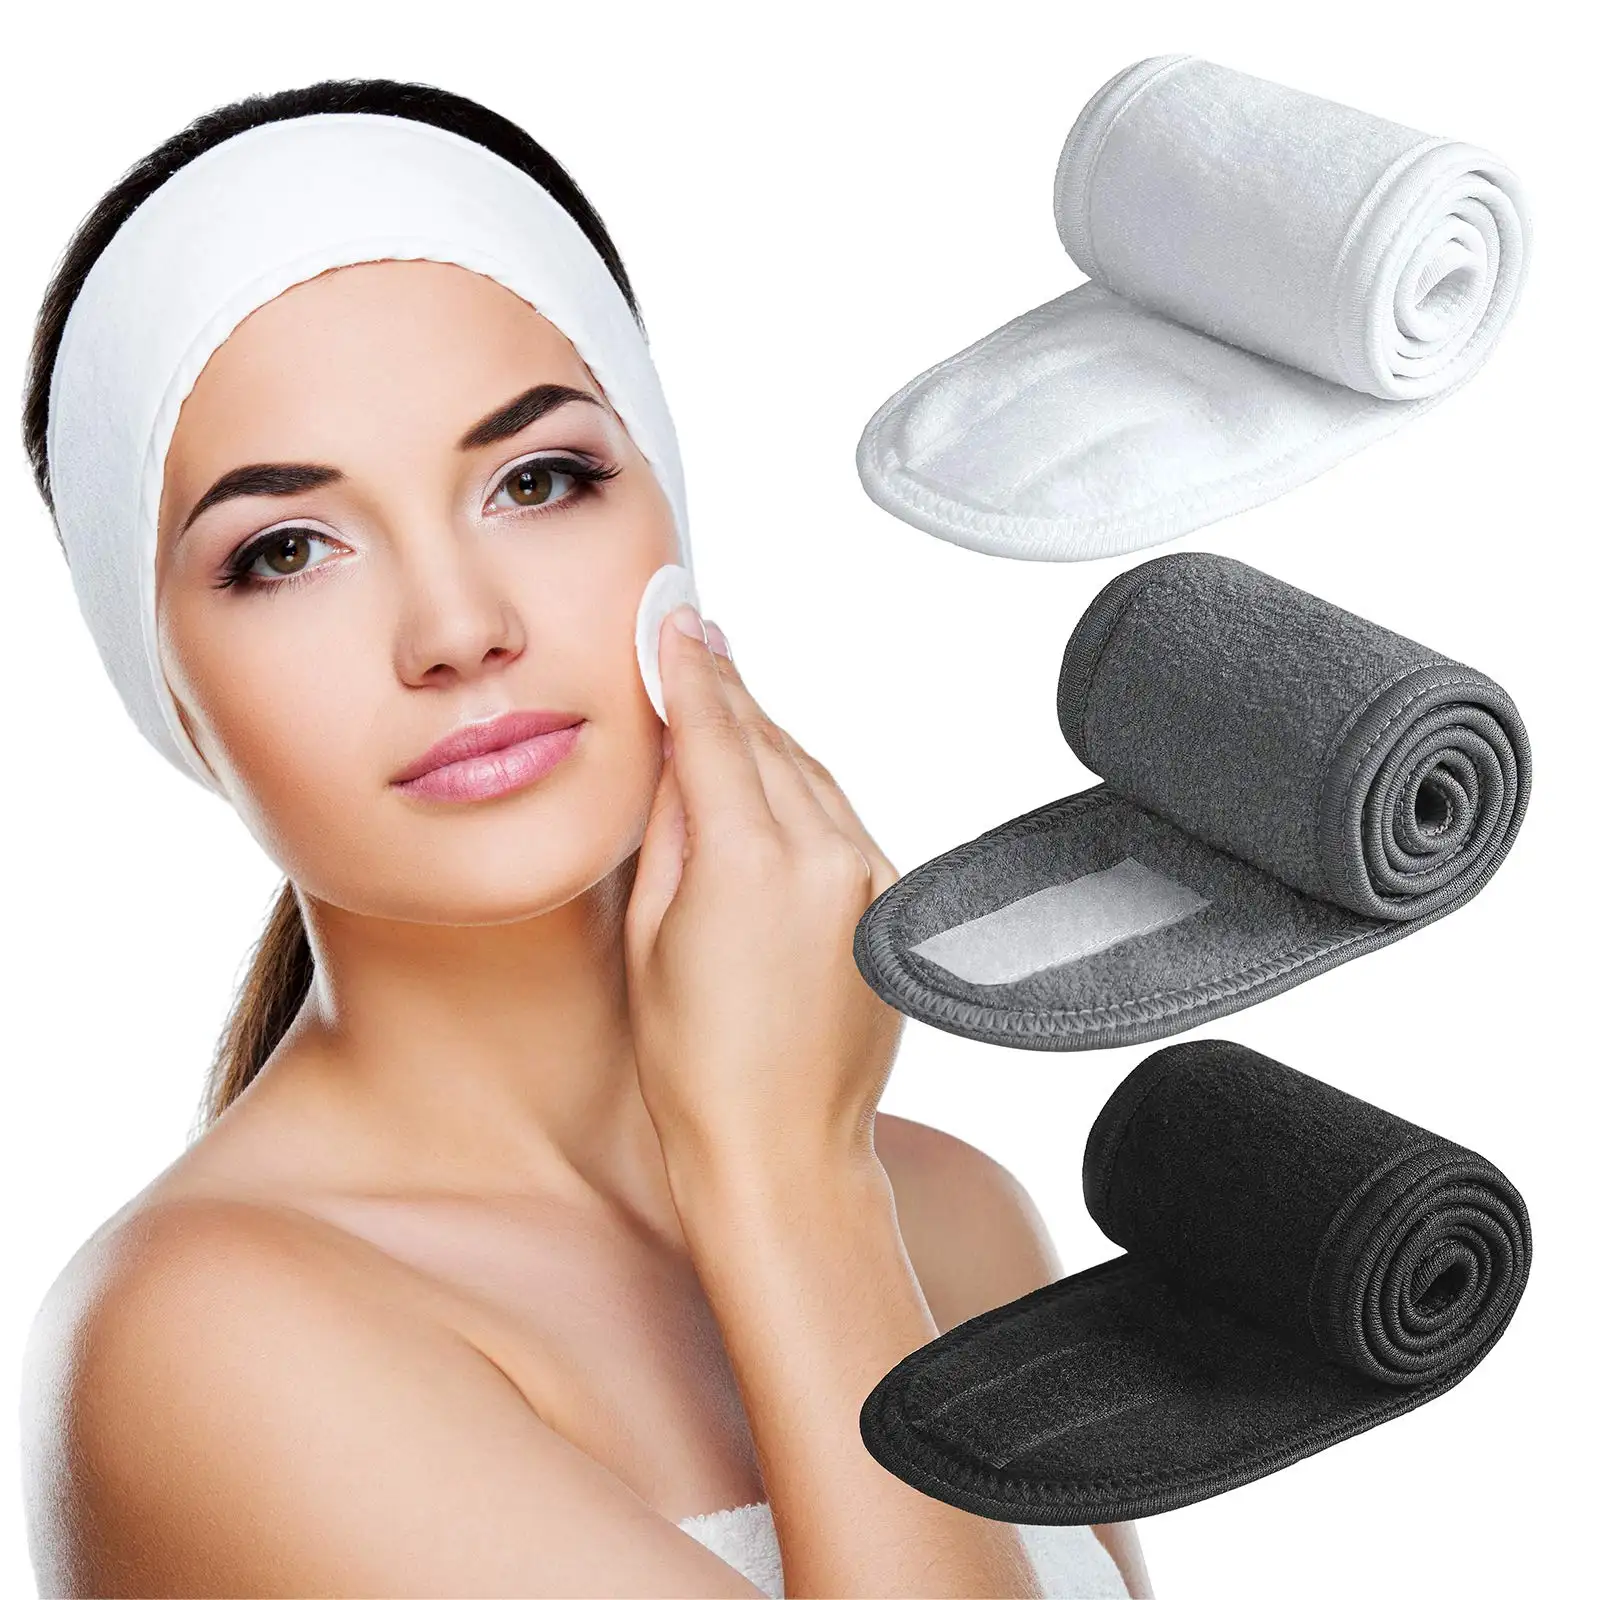 Stirnband Ultra Soft verstellbare Gesichts wäsche Stirnband Frottee Stretch Make Up Wrap für Gesichts wäsche, Dusche, Gesichts maske, Yoga